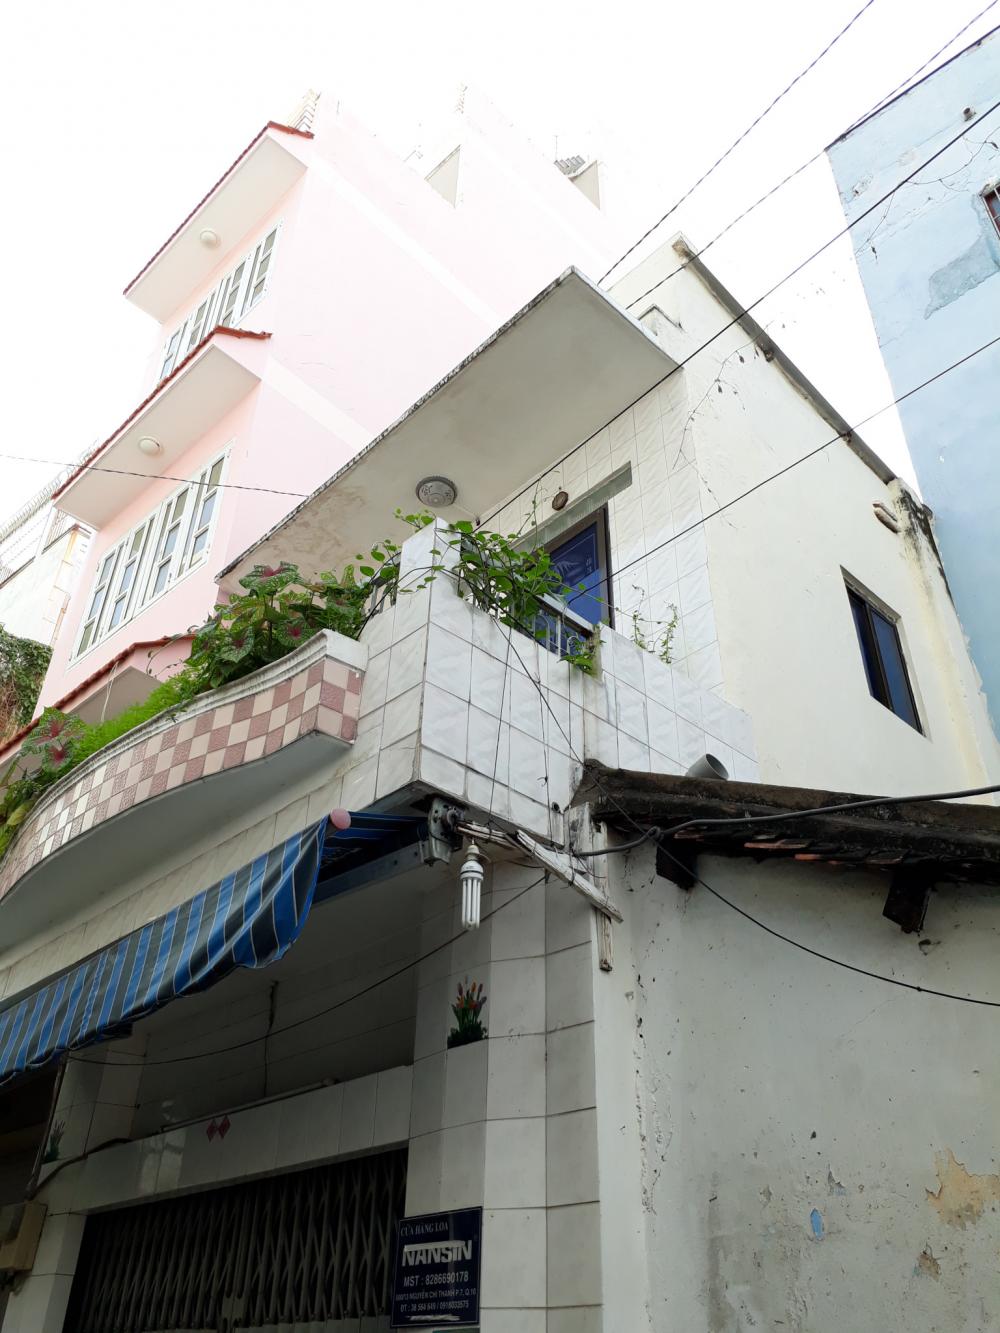 Bán nhà mặt tiền Trần Đình Xu gần Trần Hưng Đạo, DT 4x14m, 3L, giá 16,3 tỷ